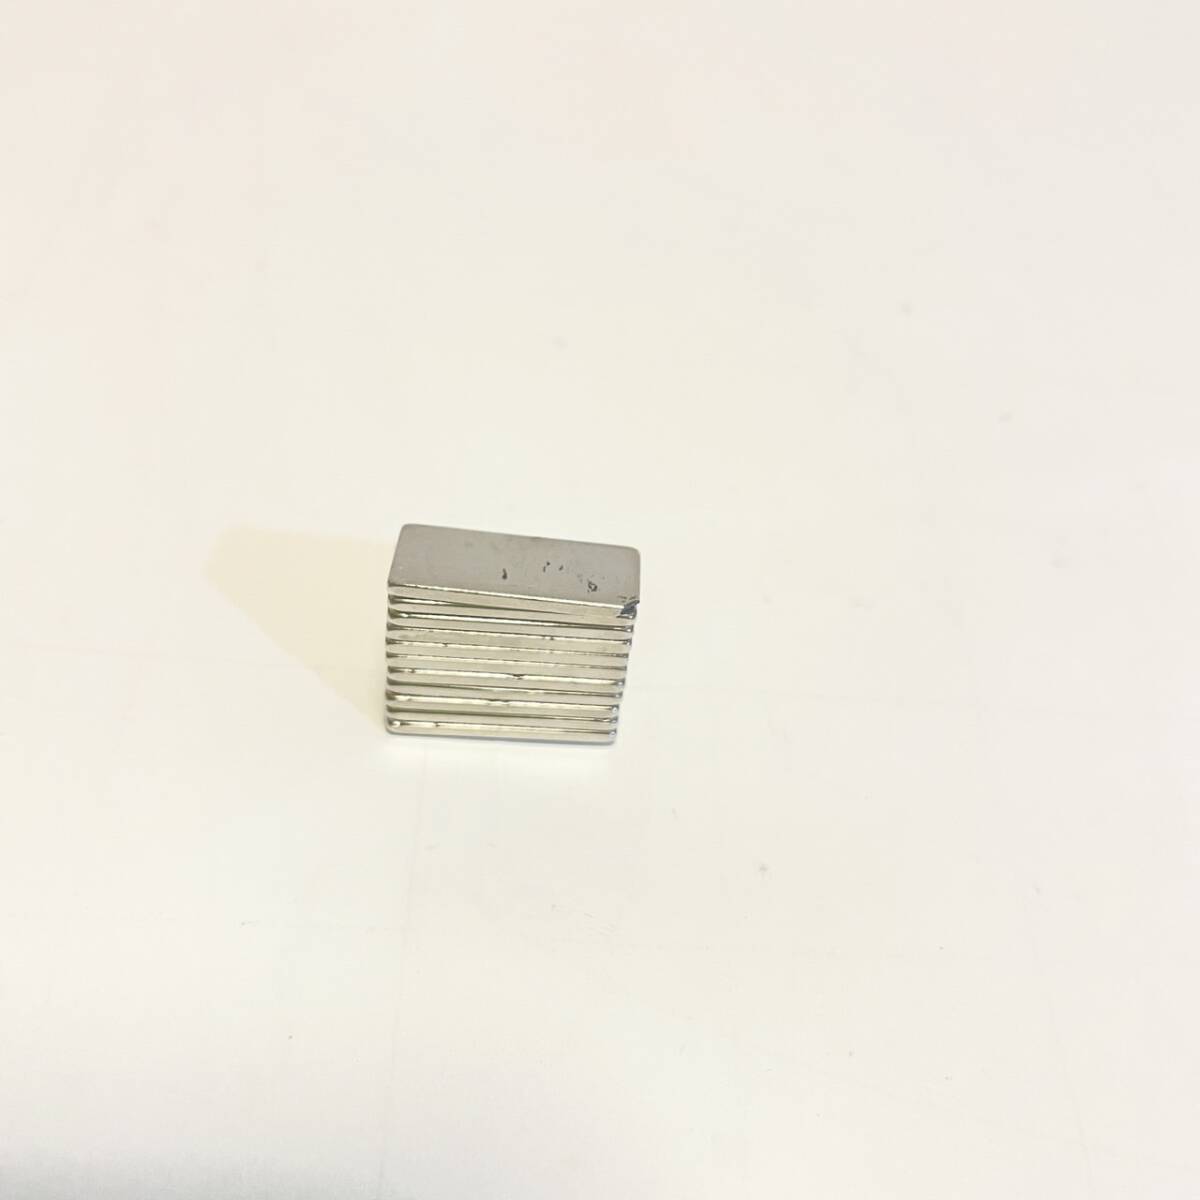 強力マグネット 角型 ネオジム磁石 20x8x1.5mm 直方体 強力磁石 小型長方形 マグネット 超強力な 棒磁石 DIY、建築科学、工芸 12個セット_画像10